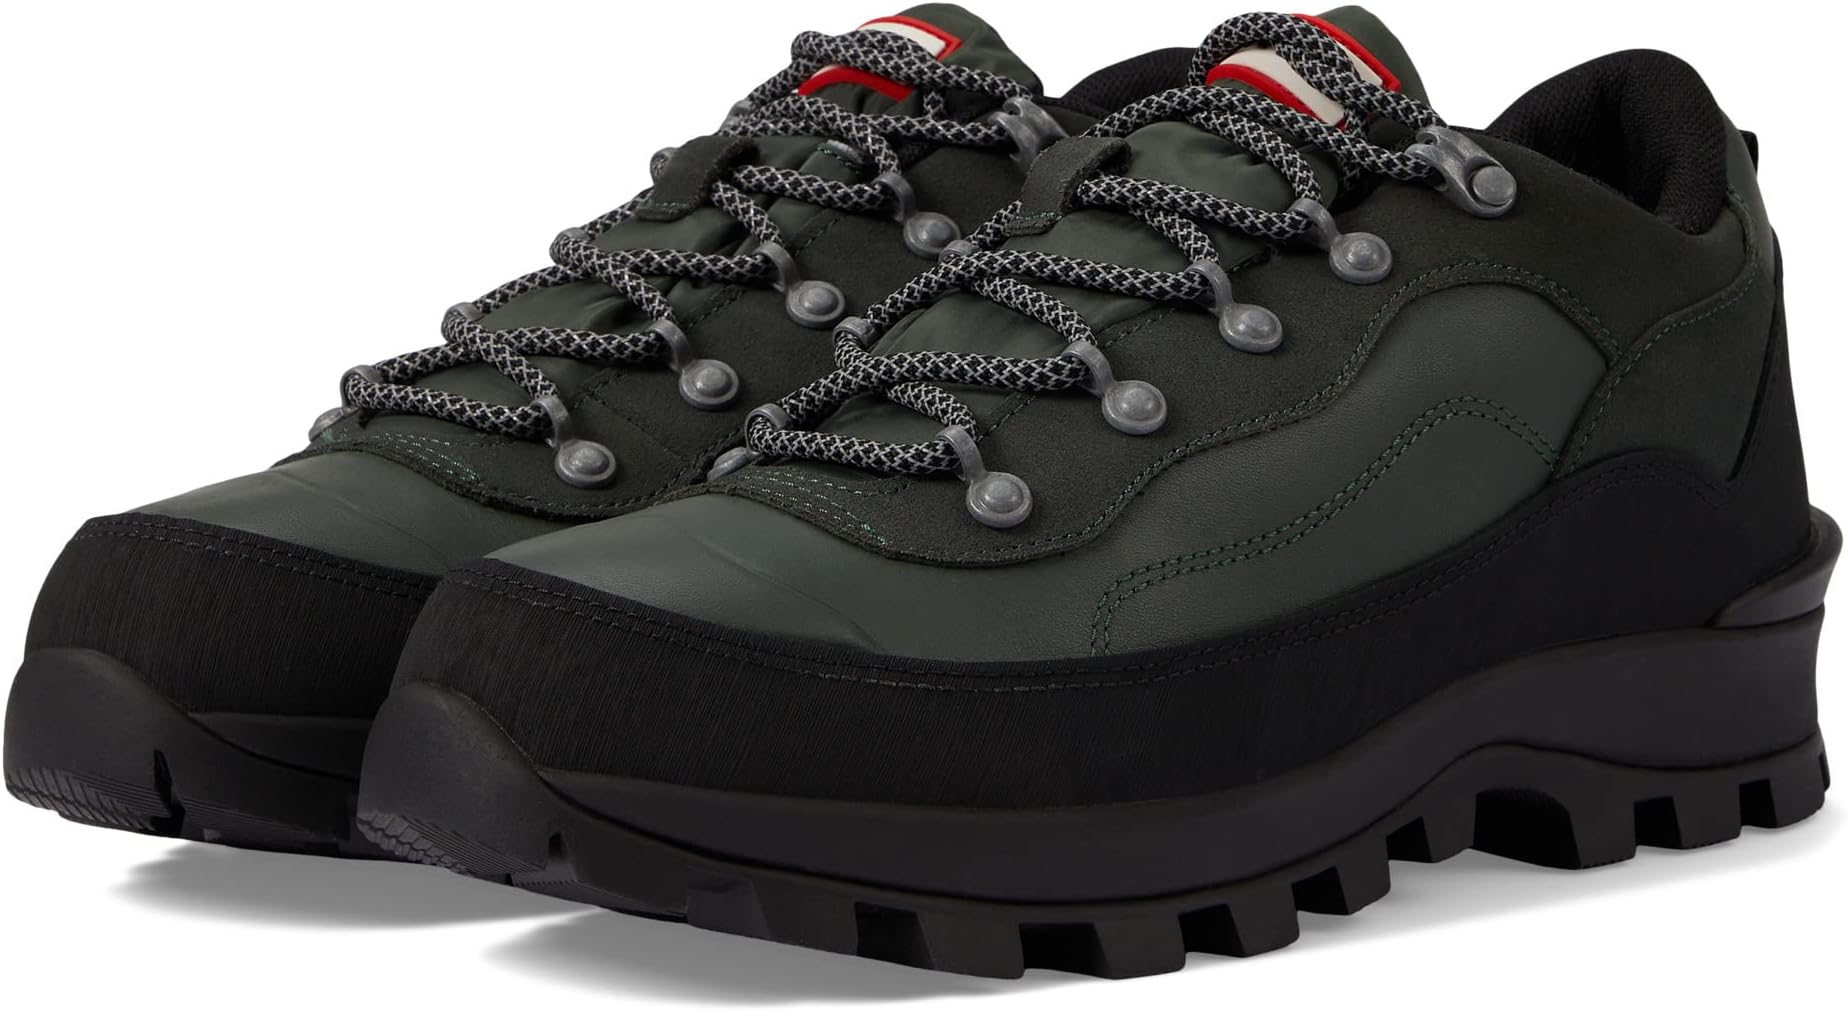 Кроссовки Explorer Leather Shoe Hunter, цвет Olive/Black кроссовки hunter water shoe цвет black marble black